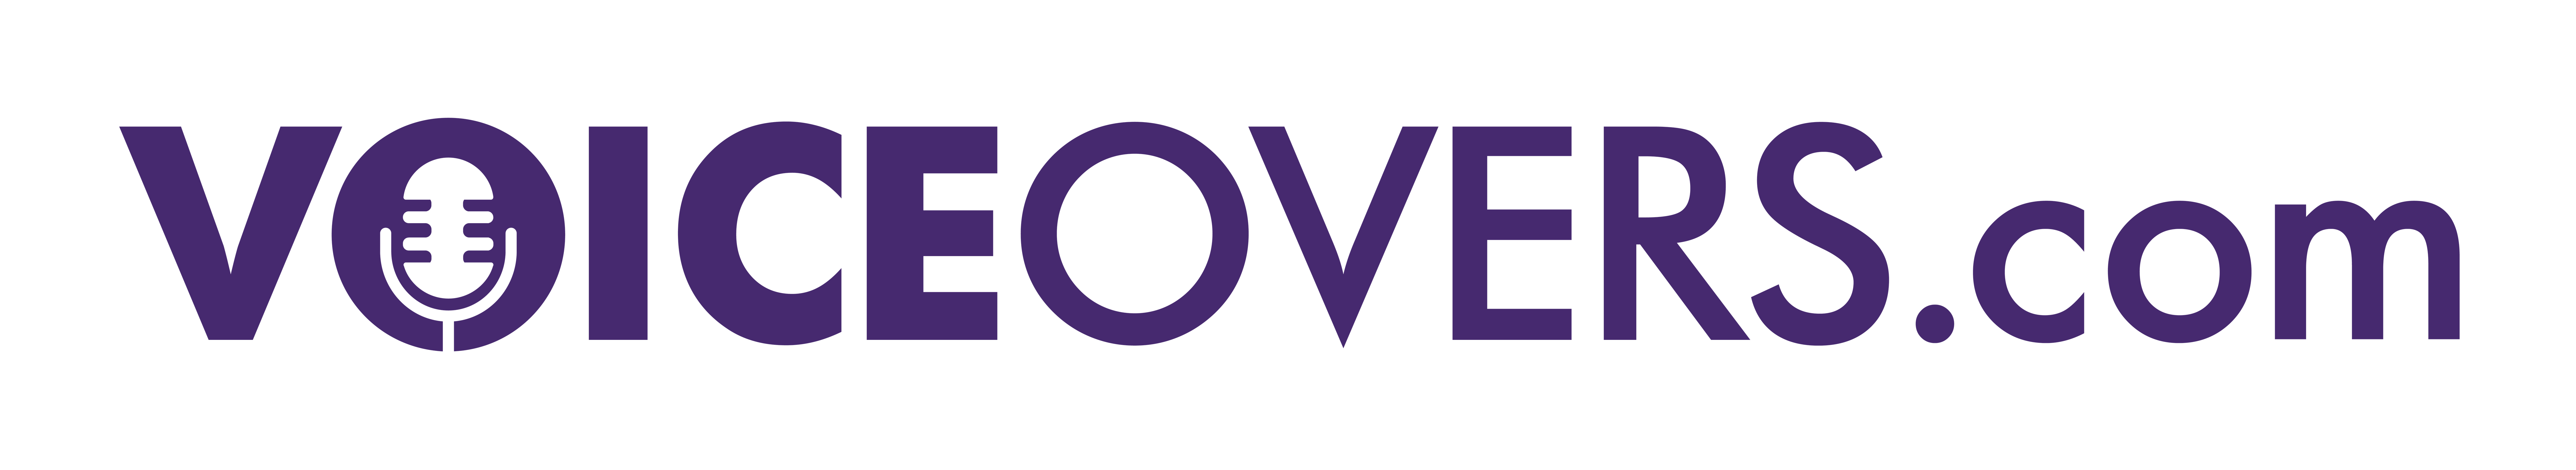 voiceovers-com_logo